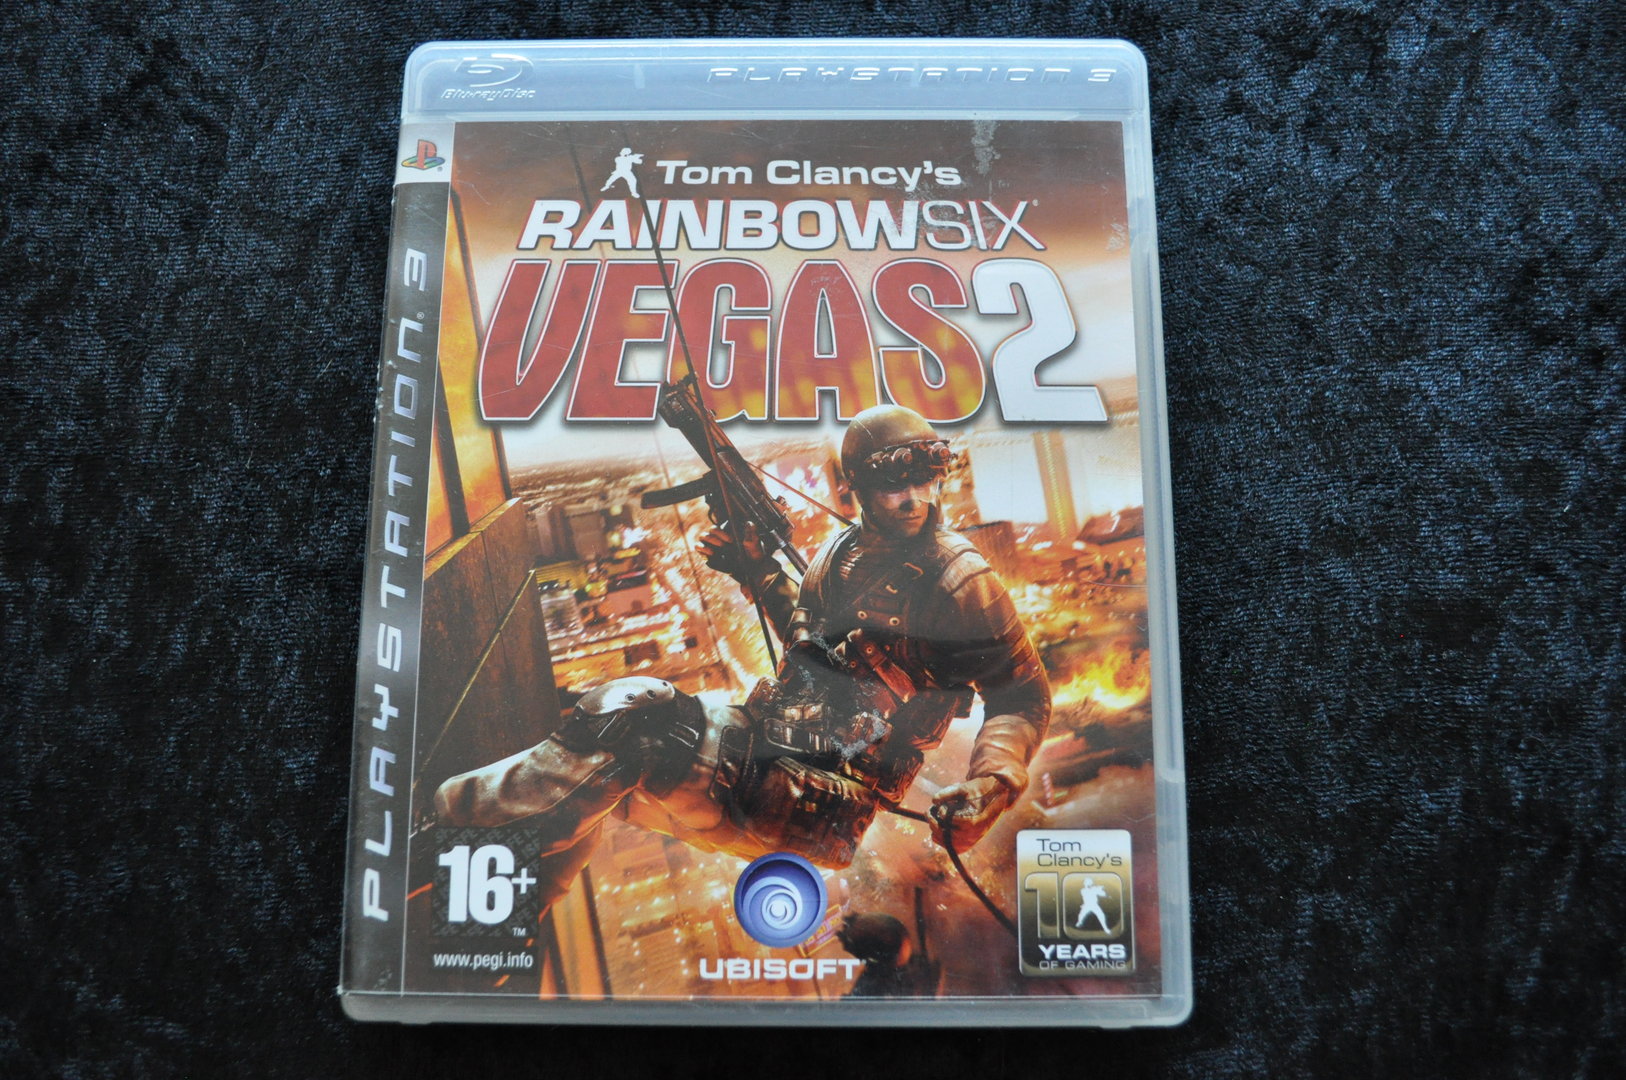 Puñalada Crítico elevación Tom Clancy's Rainbow Six Vegas 2 Playstation 3 PS3 - Retrogameking.com |  Retro,Games,Consoles,Collectables